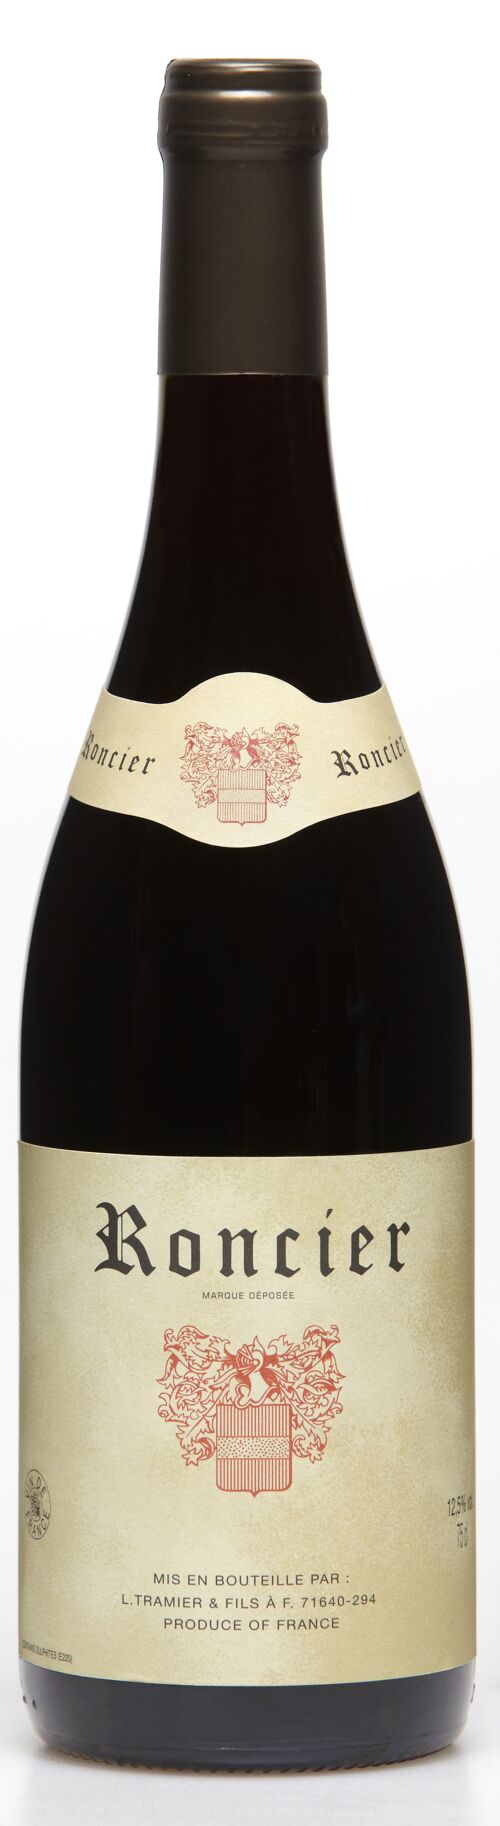 Roncier Vin Rouge 75cl Authentique (VDF Bourgogne) - Idéal avec du Saucisson et de la Charcuterie